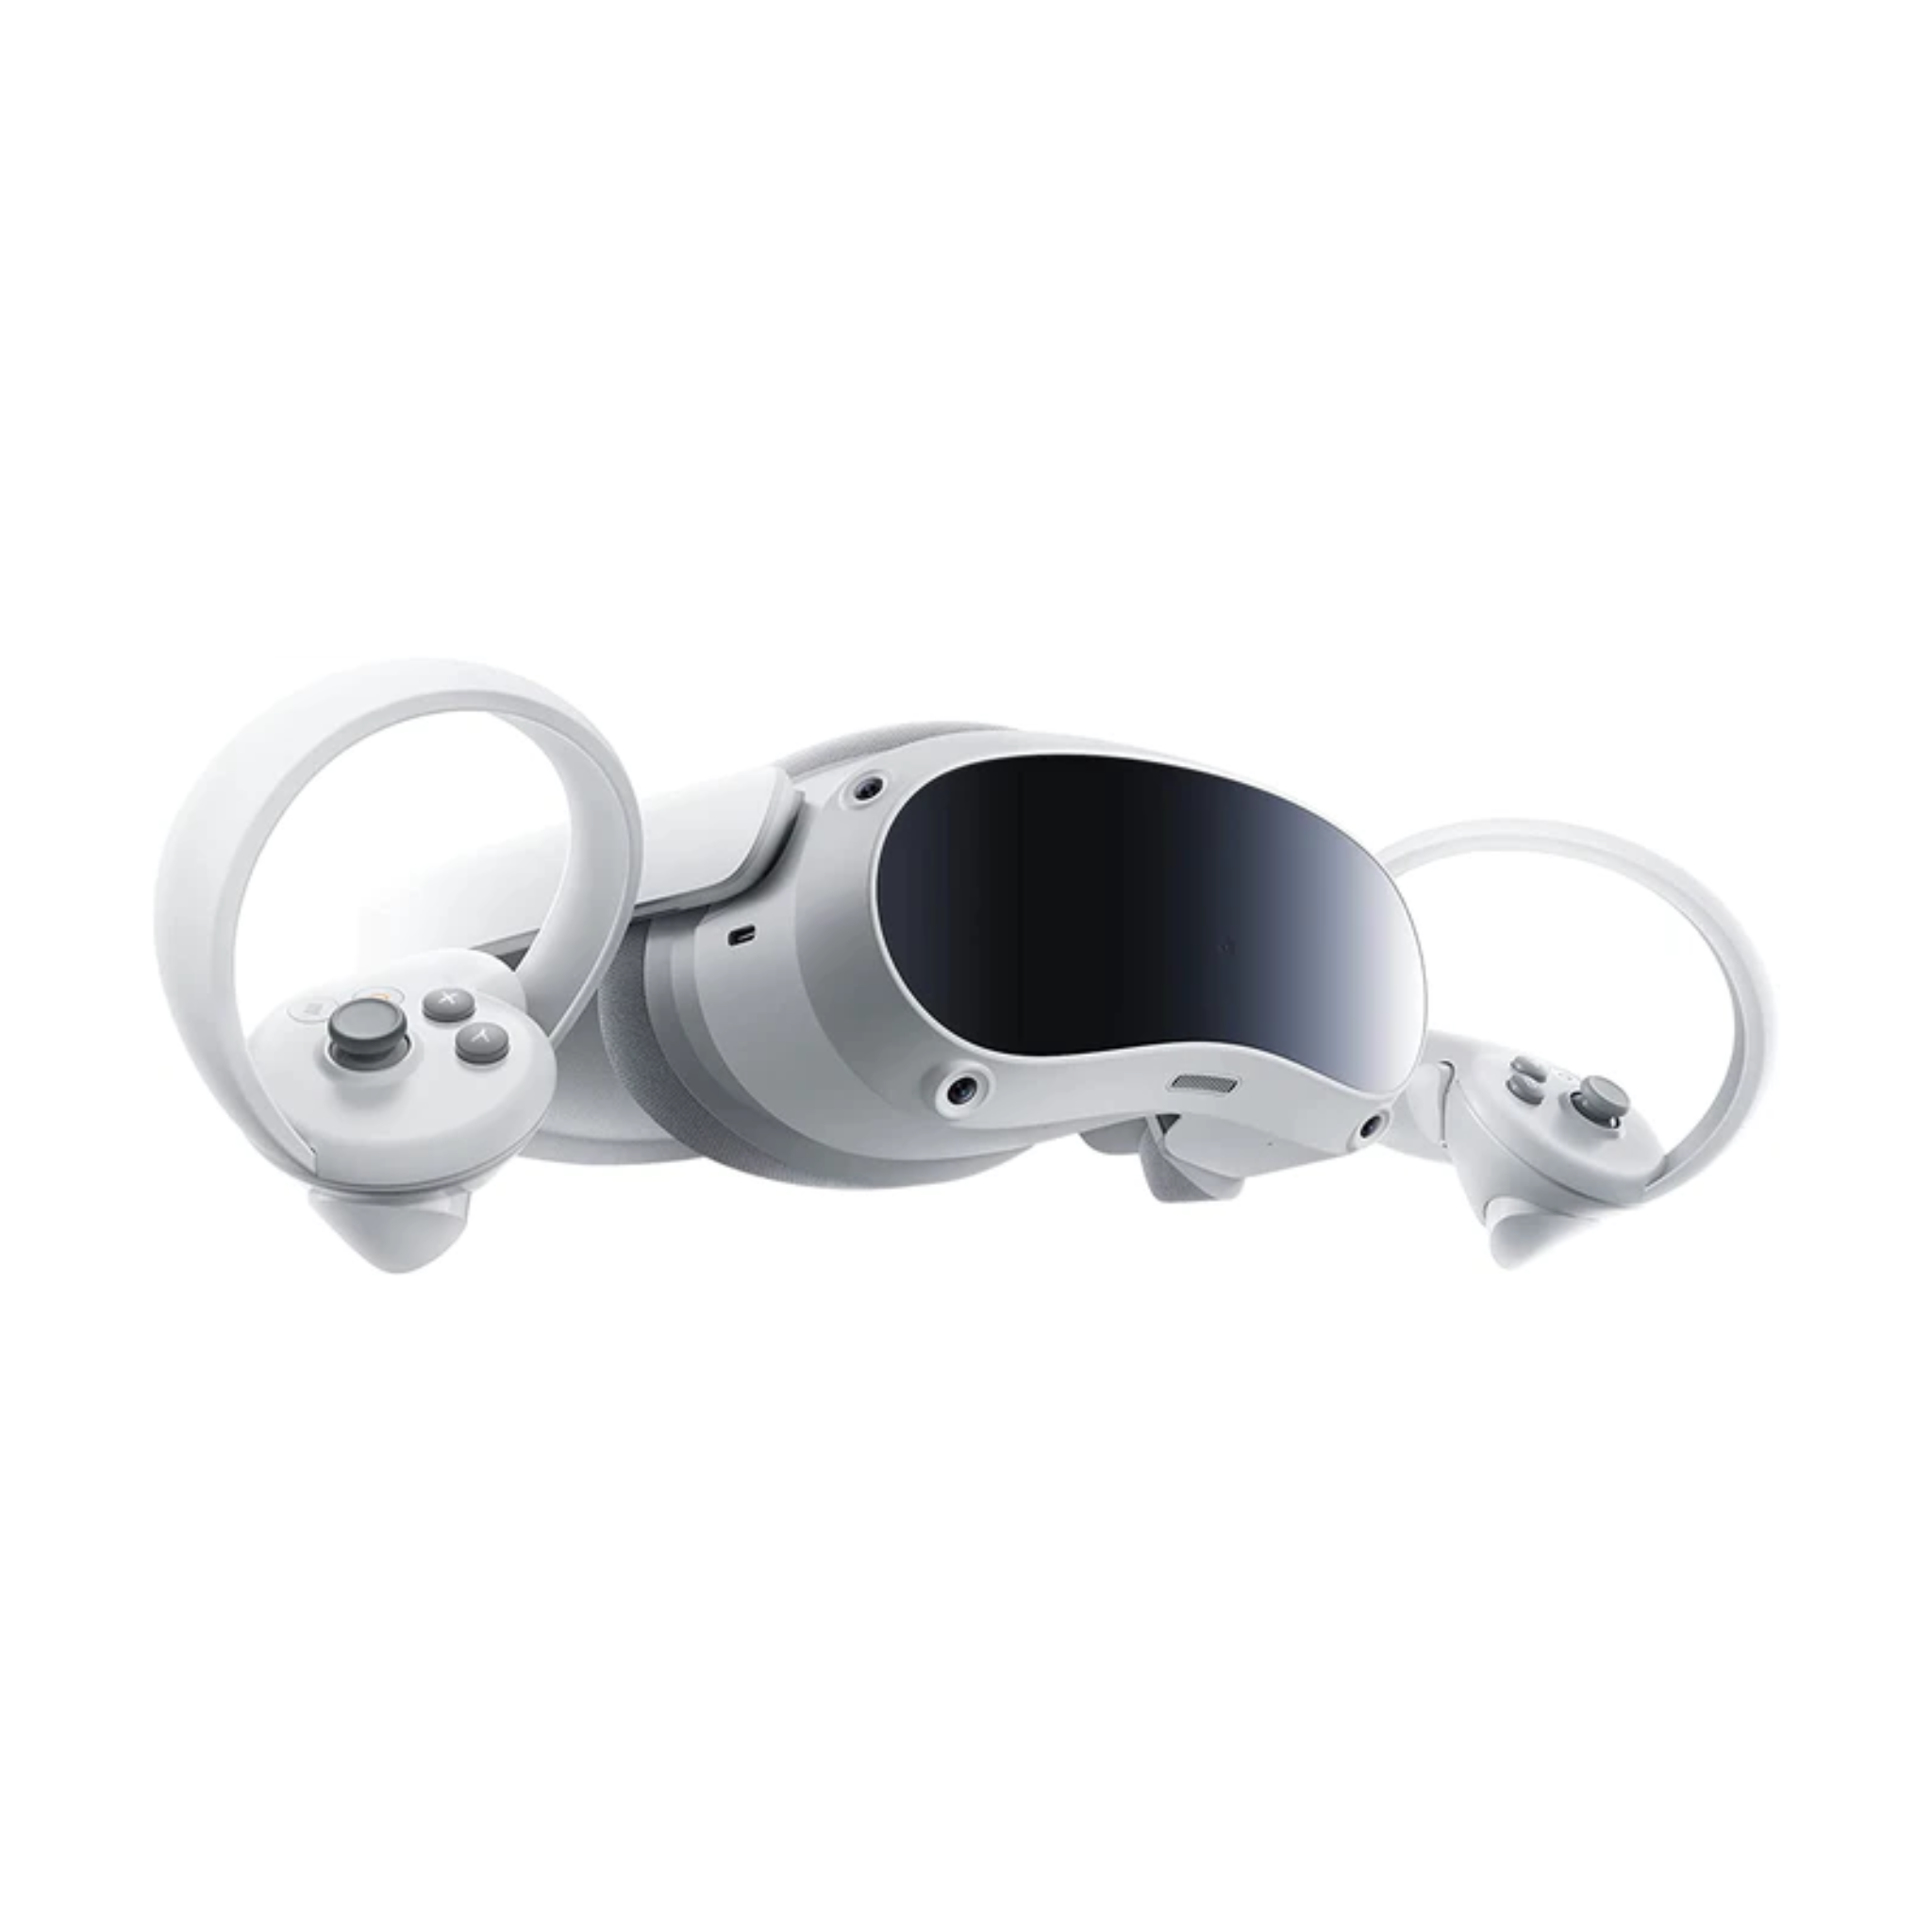 Como Jogar Assetto Corsa em VR no Oculus Quest 2